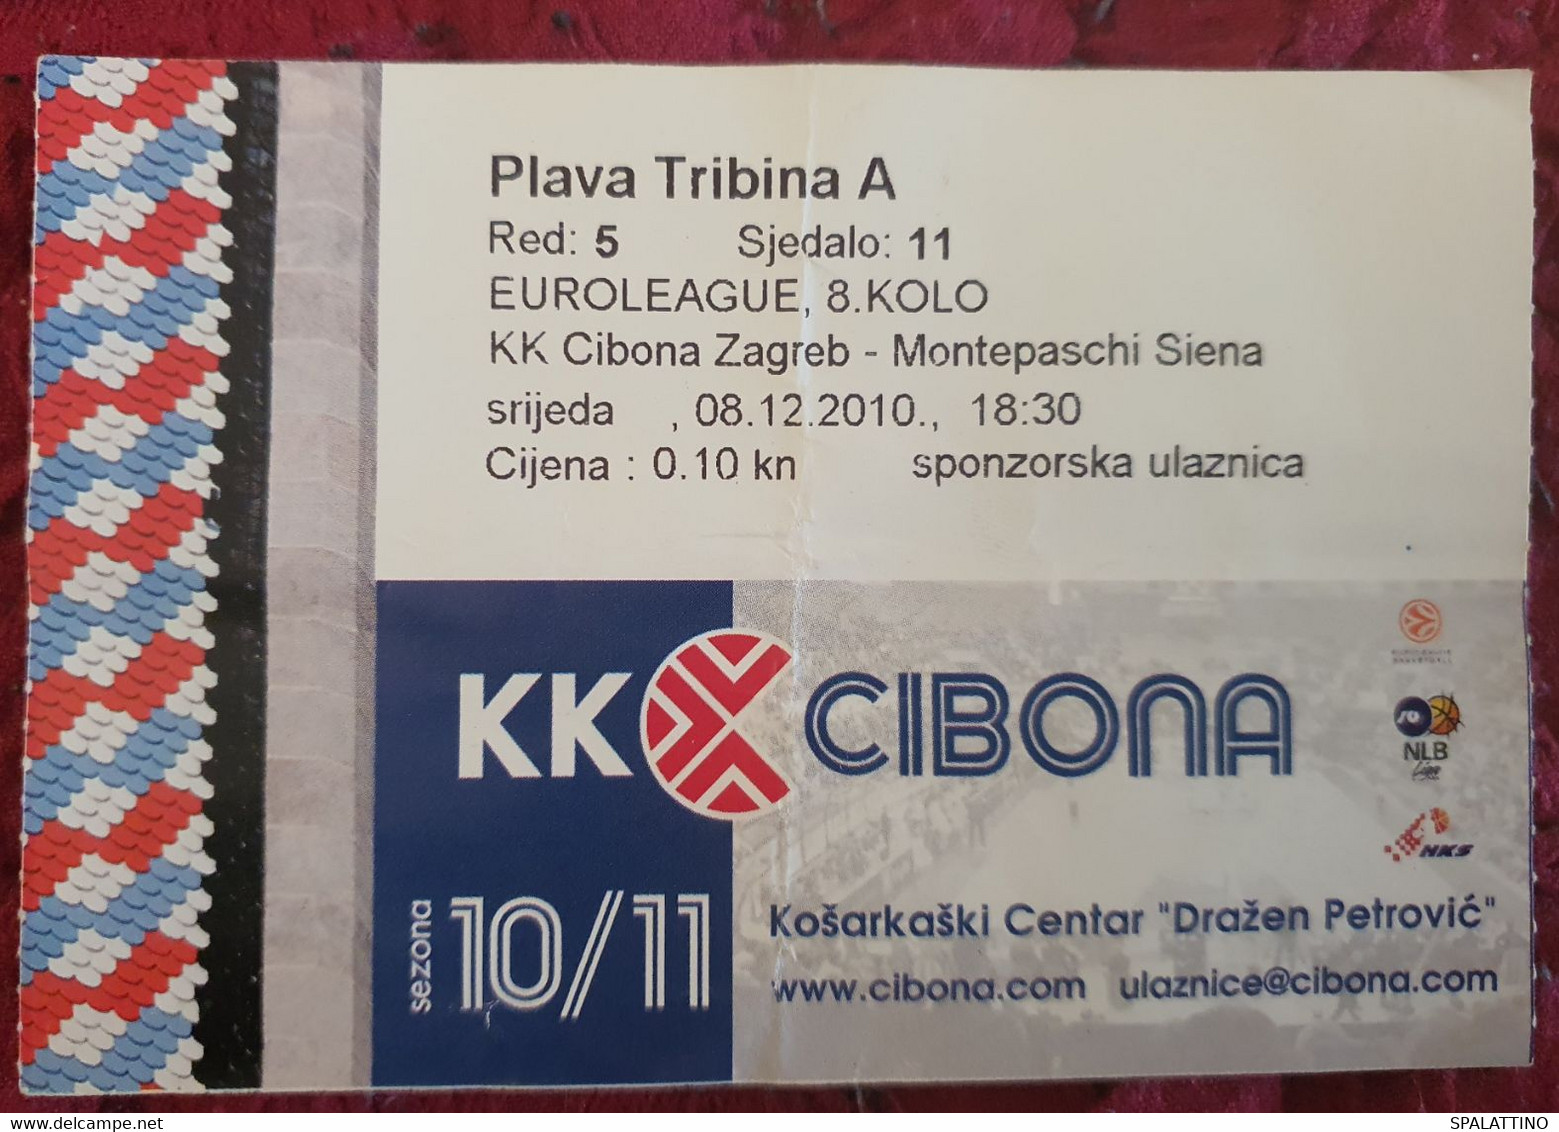 KK CIBONA- MONTEPASCHI SIENA, EUROLEAGUE 10/11 MATCH TICKET - Habillement, Souvenirs & Autres